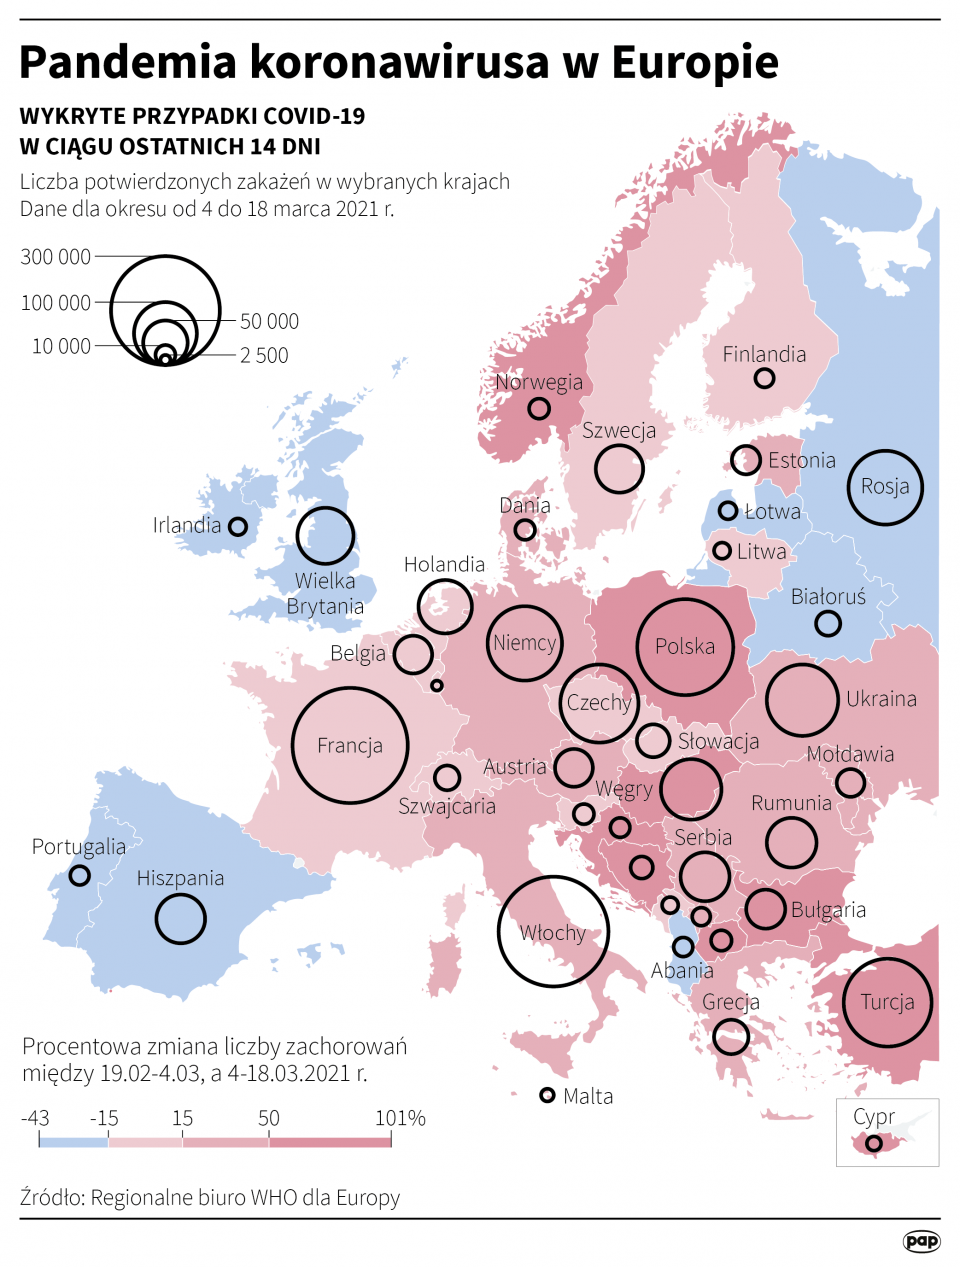 Pandemia koronawirusa w Europie [autor: Maciej Zieliński, źródło: PAP]